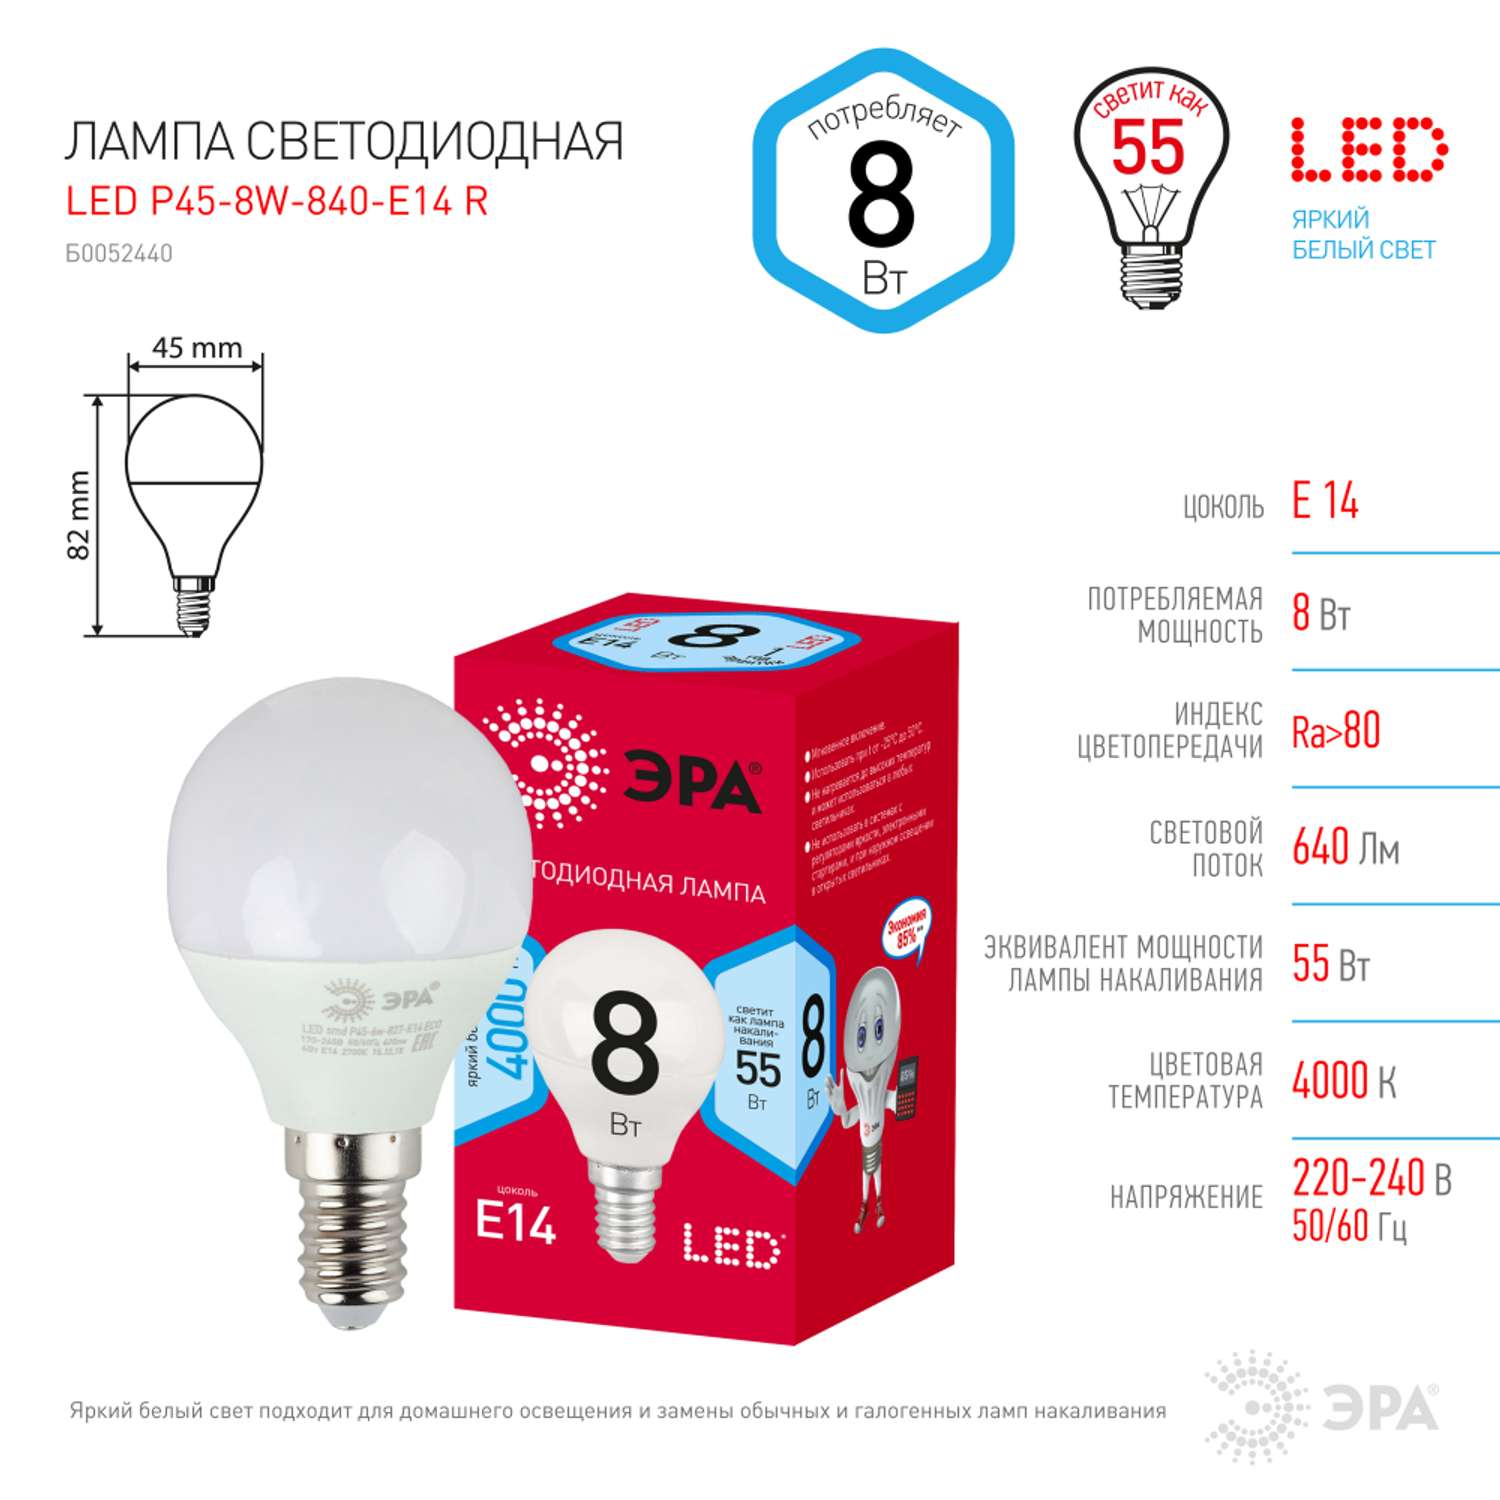 Лампочка светодиодная Эра Red Line LED P45-8W-840-E14 шар нейтральный белый свет - фото 3